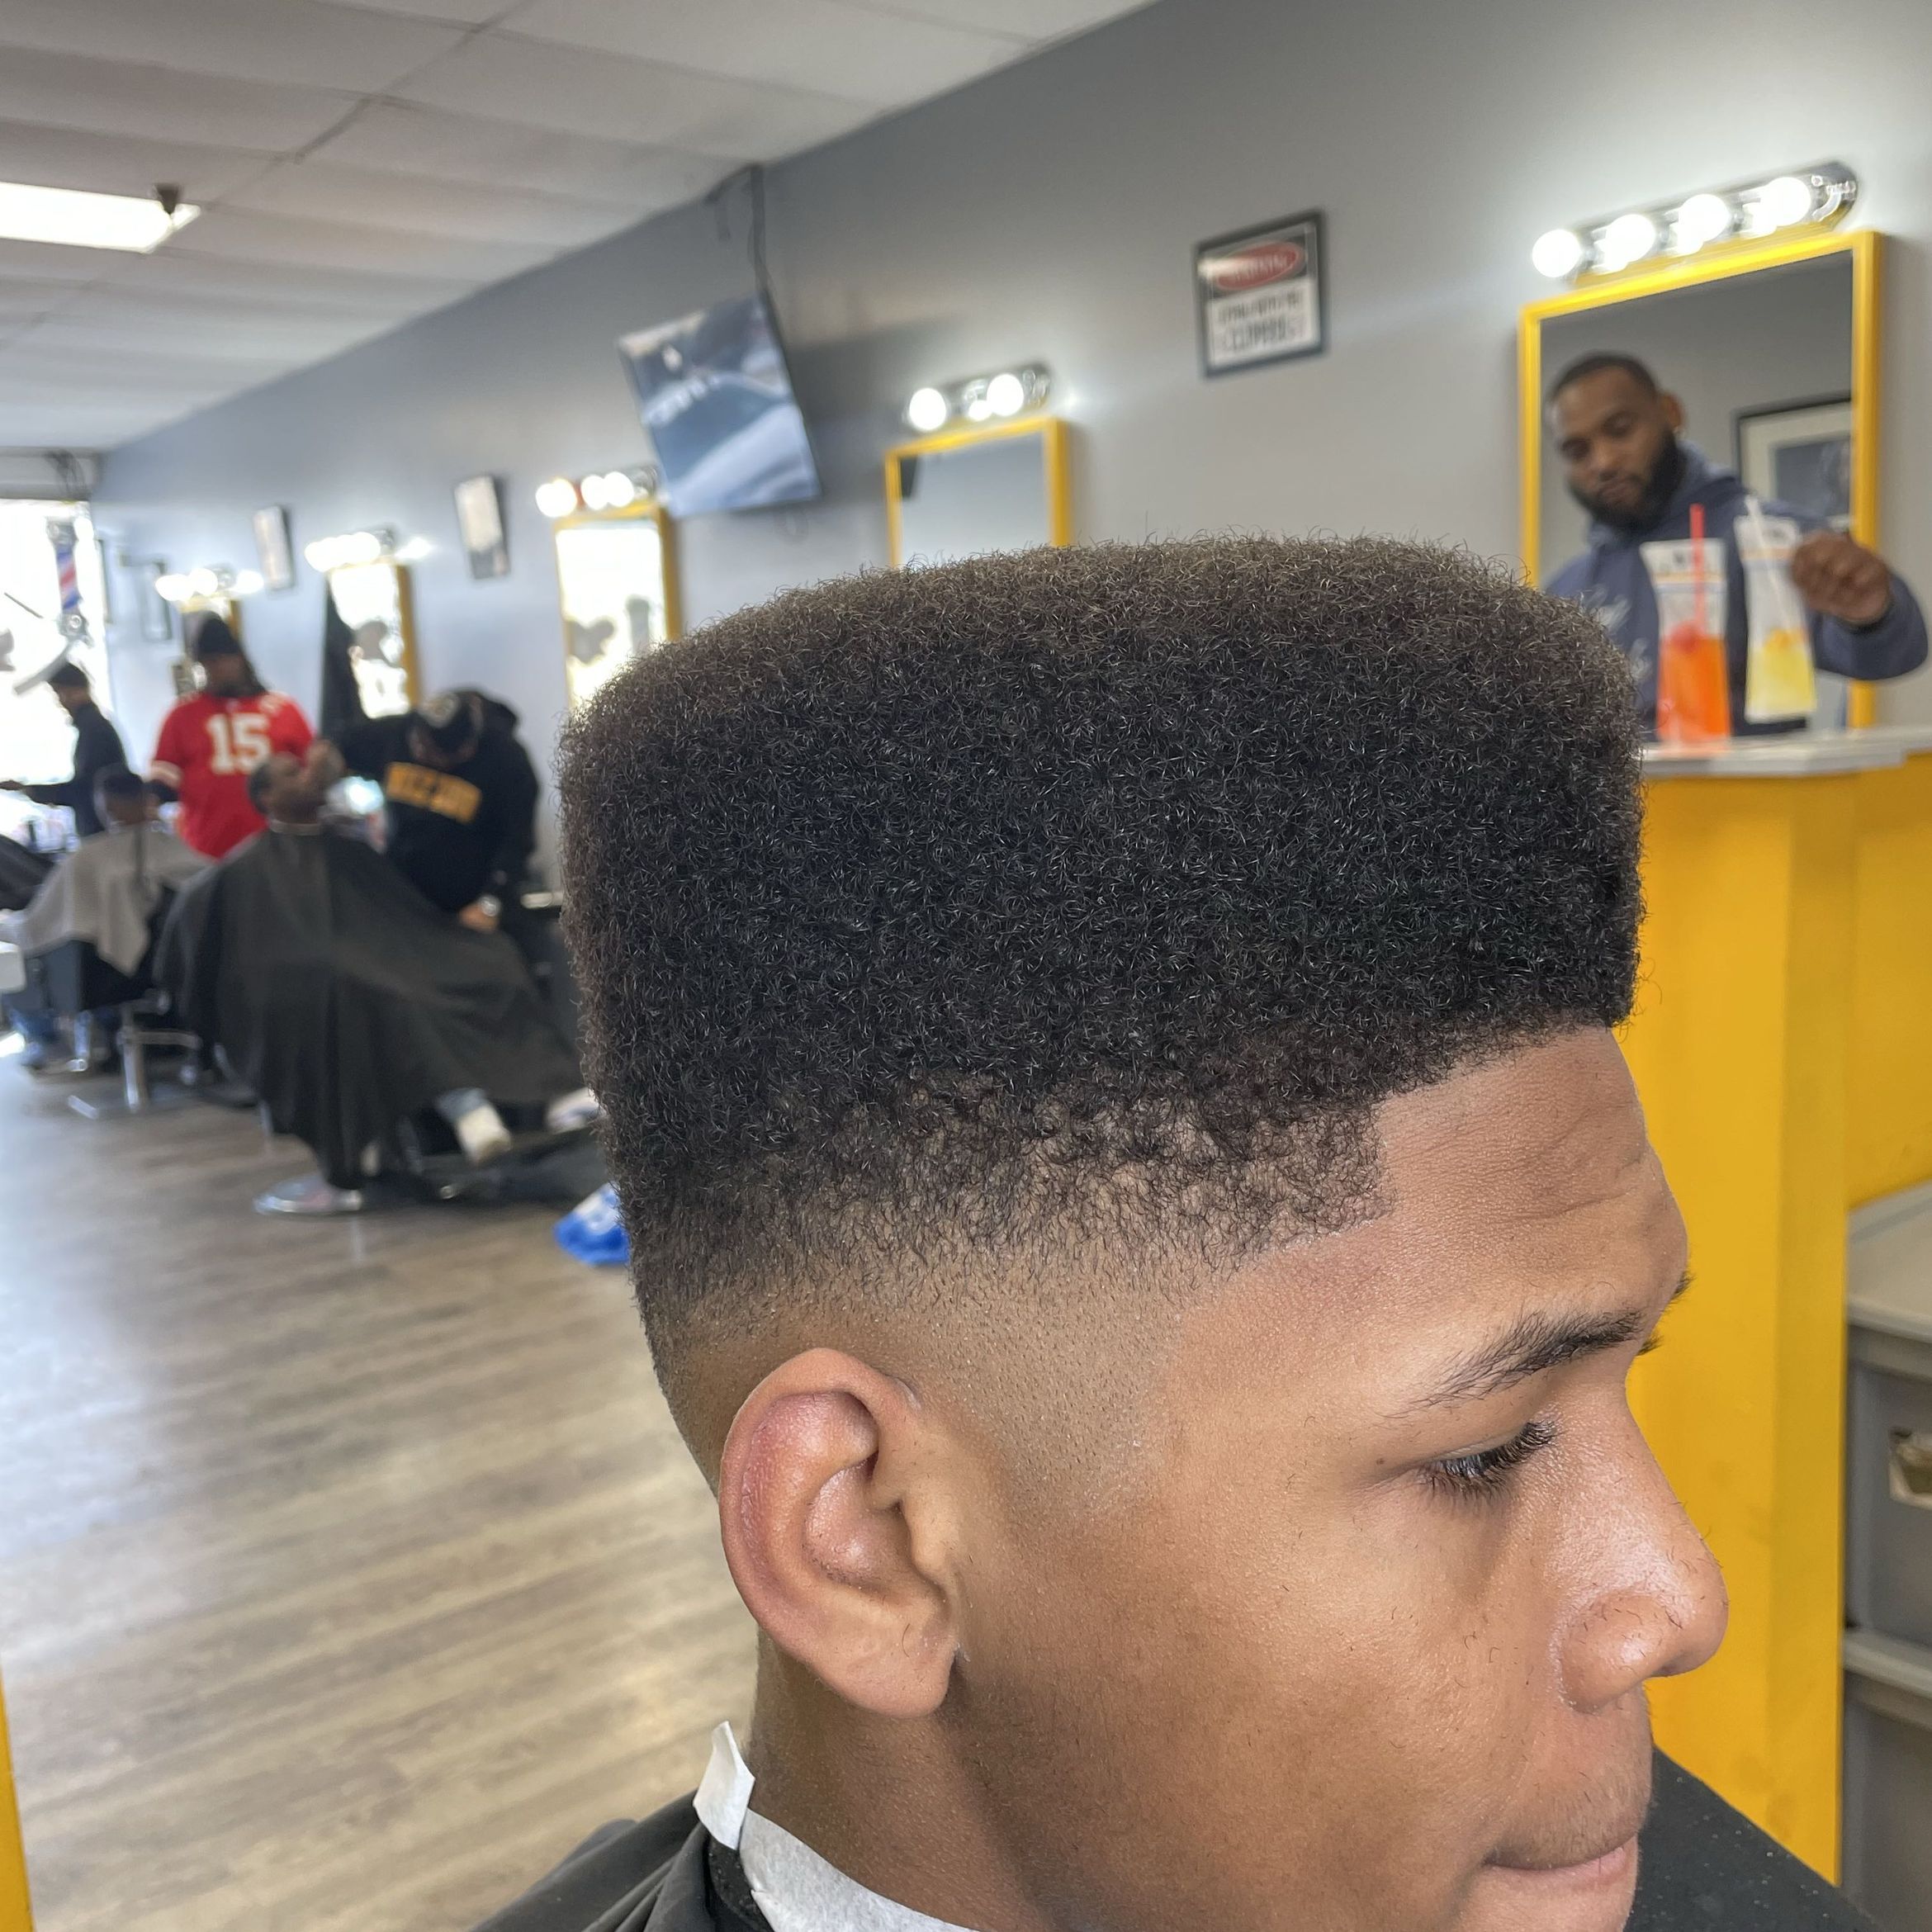 Teen Haircut (ages 13-17) portfolio